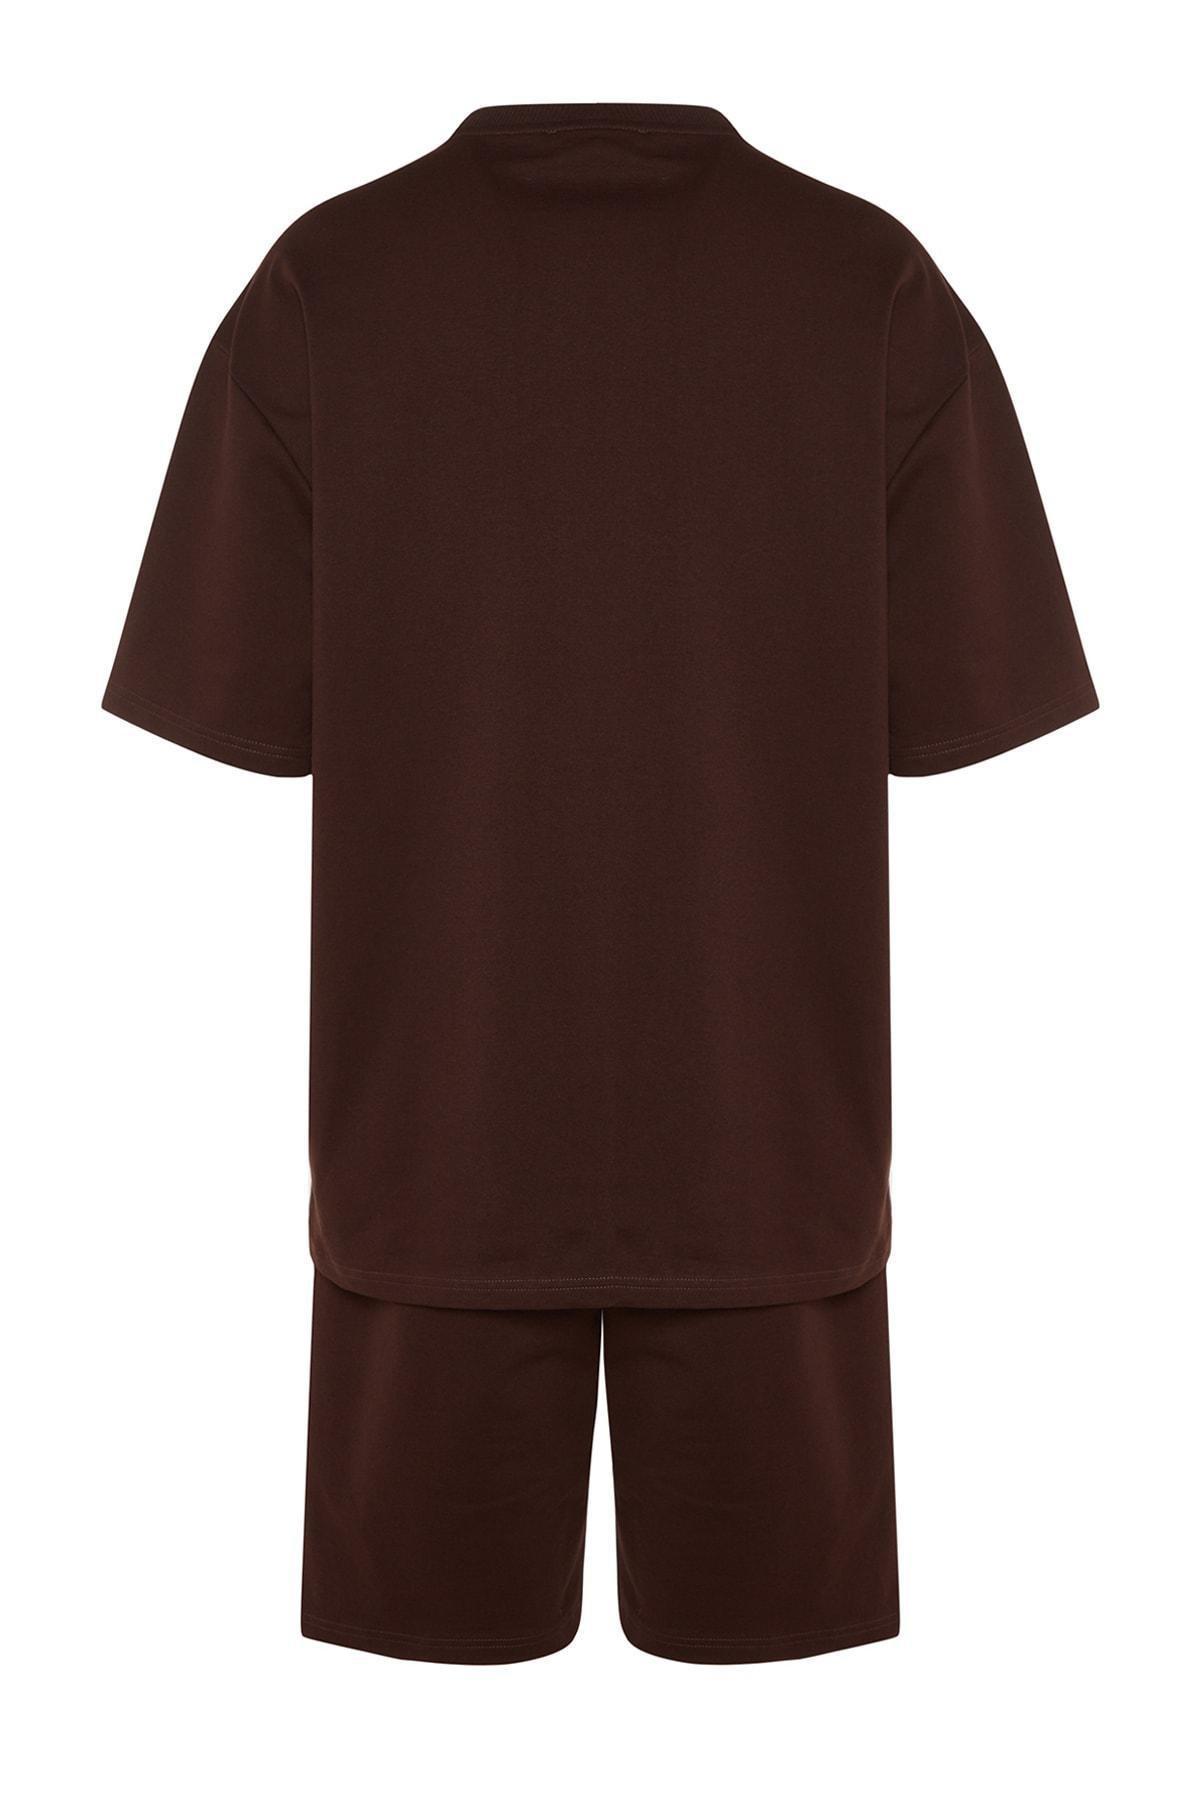 Trendyol - Brown Printed Sweatsuit